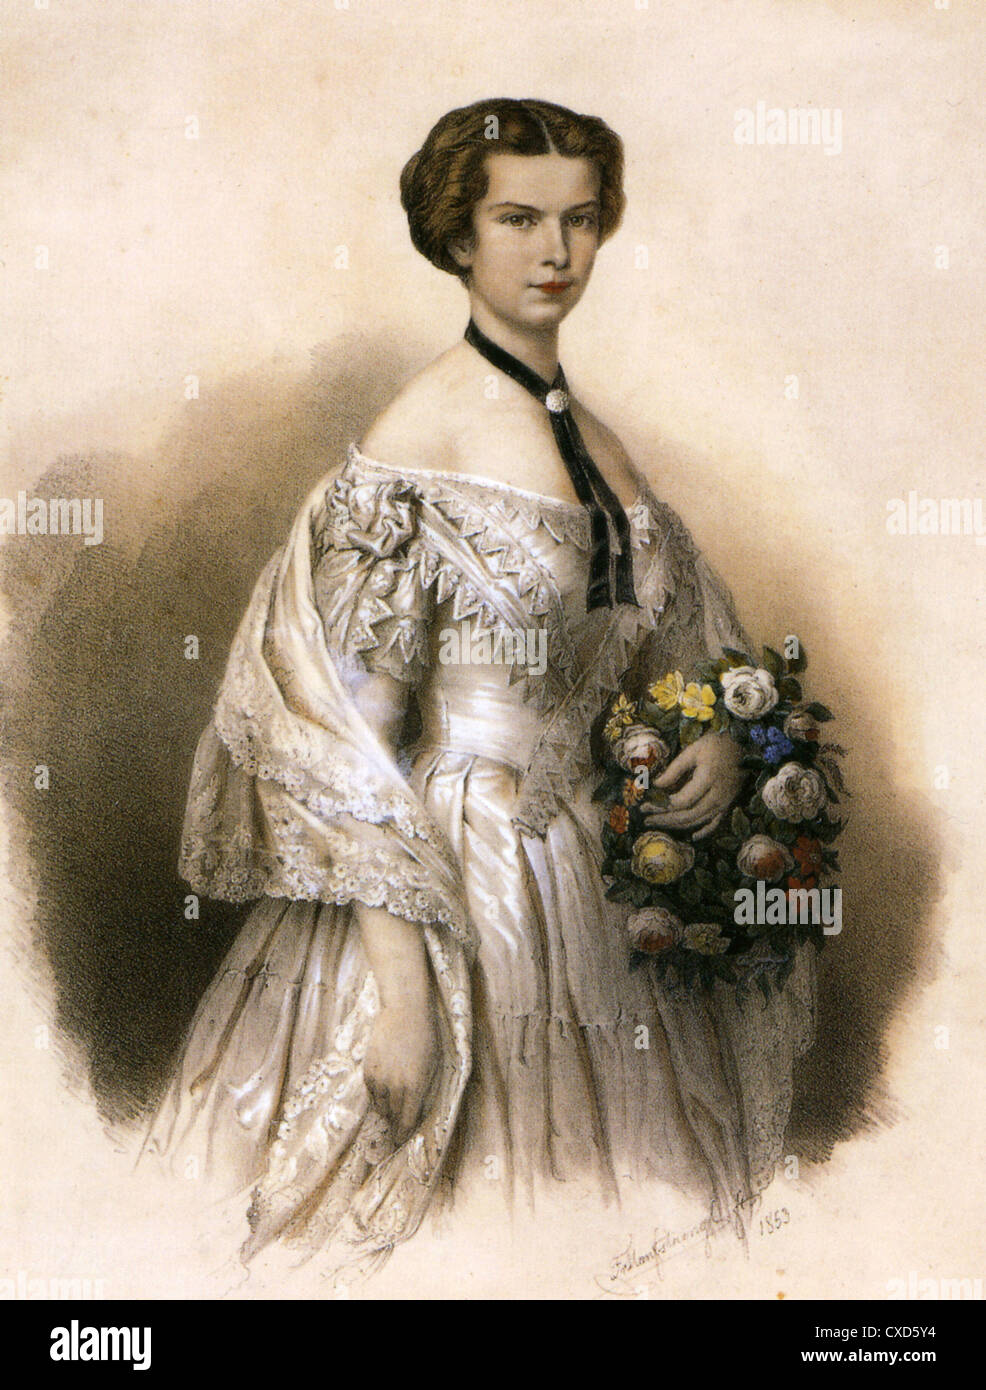 SISSI Y FRANCISCO JOSÉ La-emperatriz-elisabeth-de-austria-1837-1898-tambien-reina-de-hungria-cxd5y4